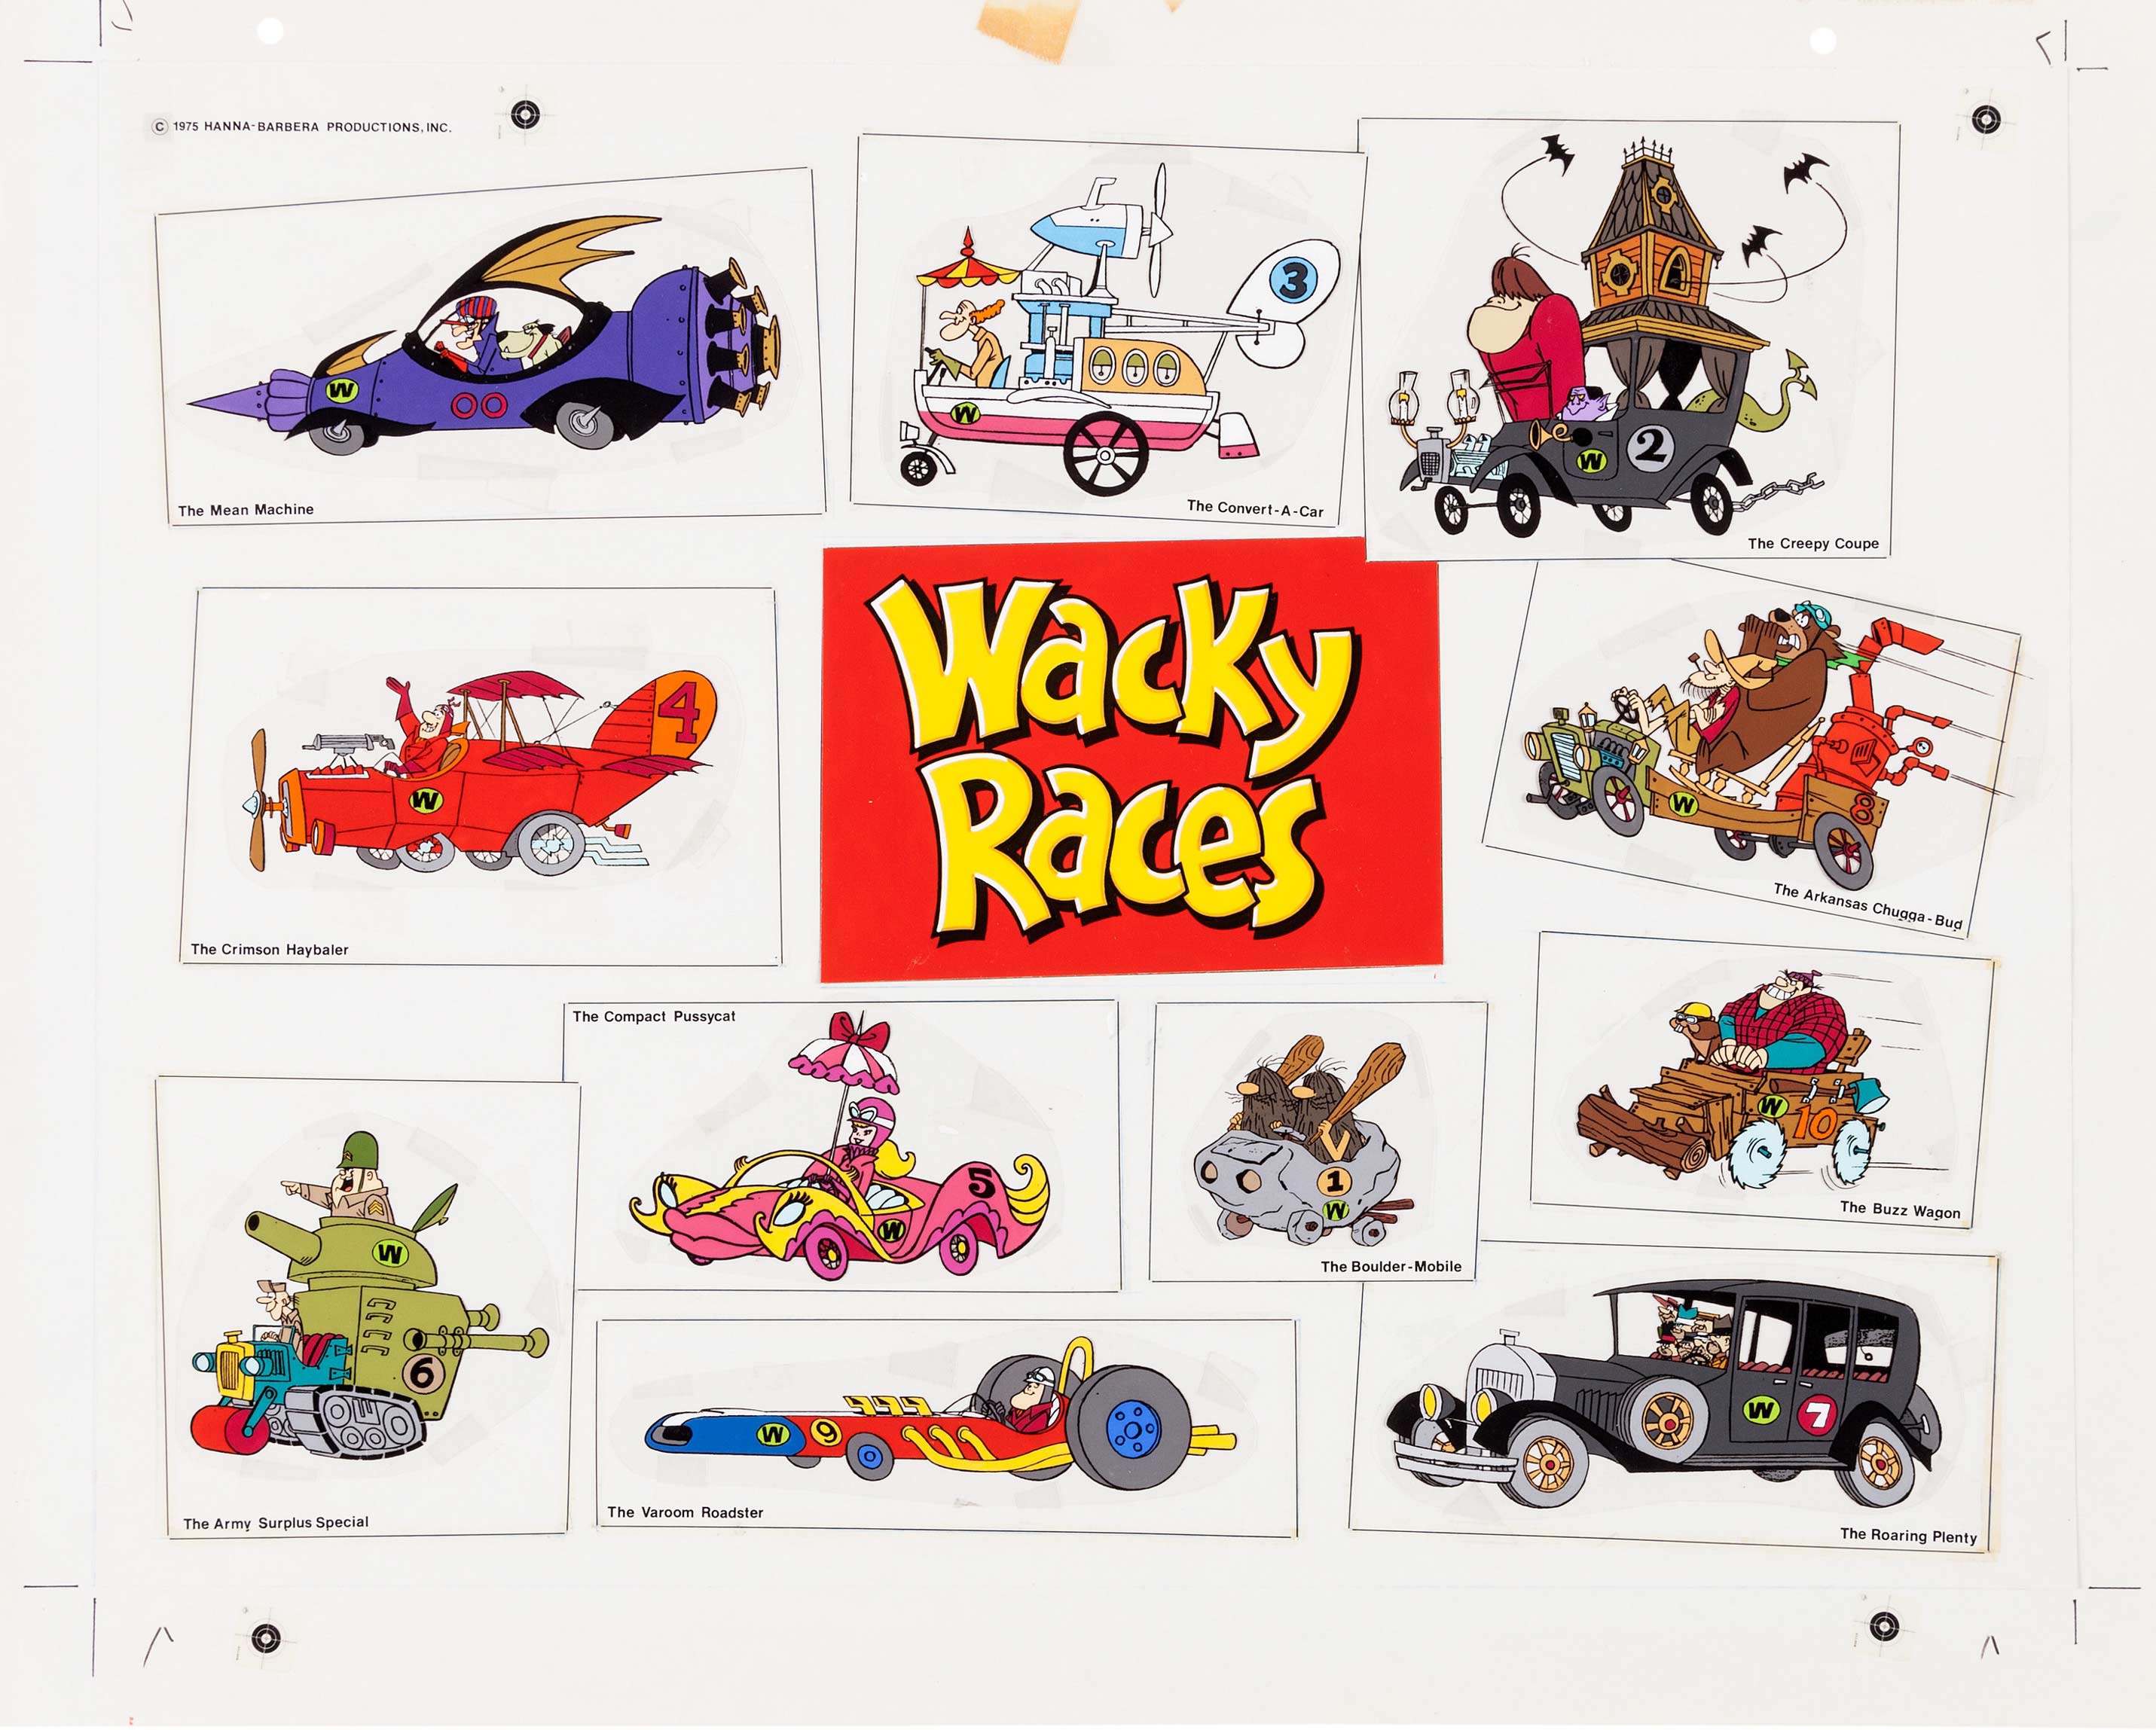 Tutte le auto delle Wacky Races, le corse pazze - Il Club dei Motori